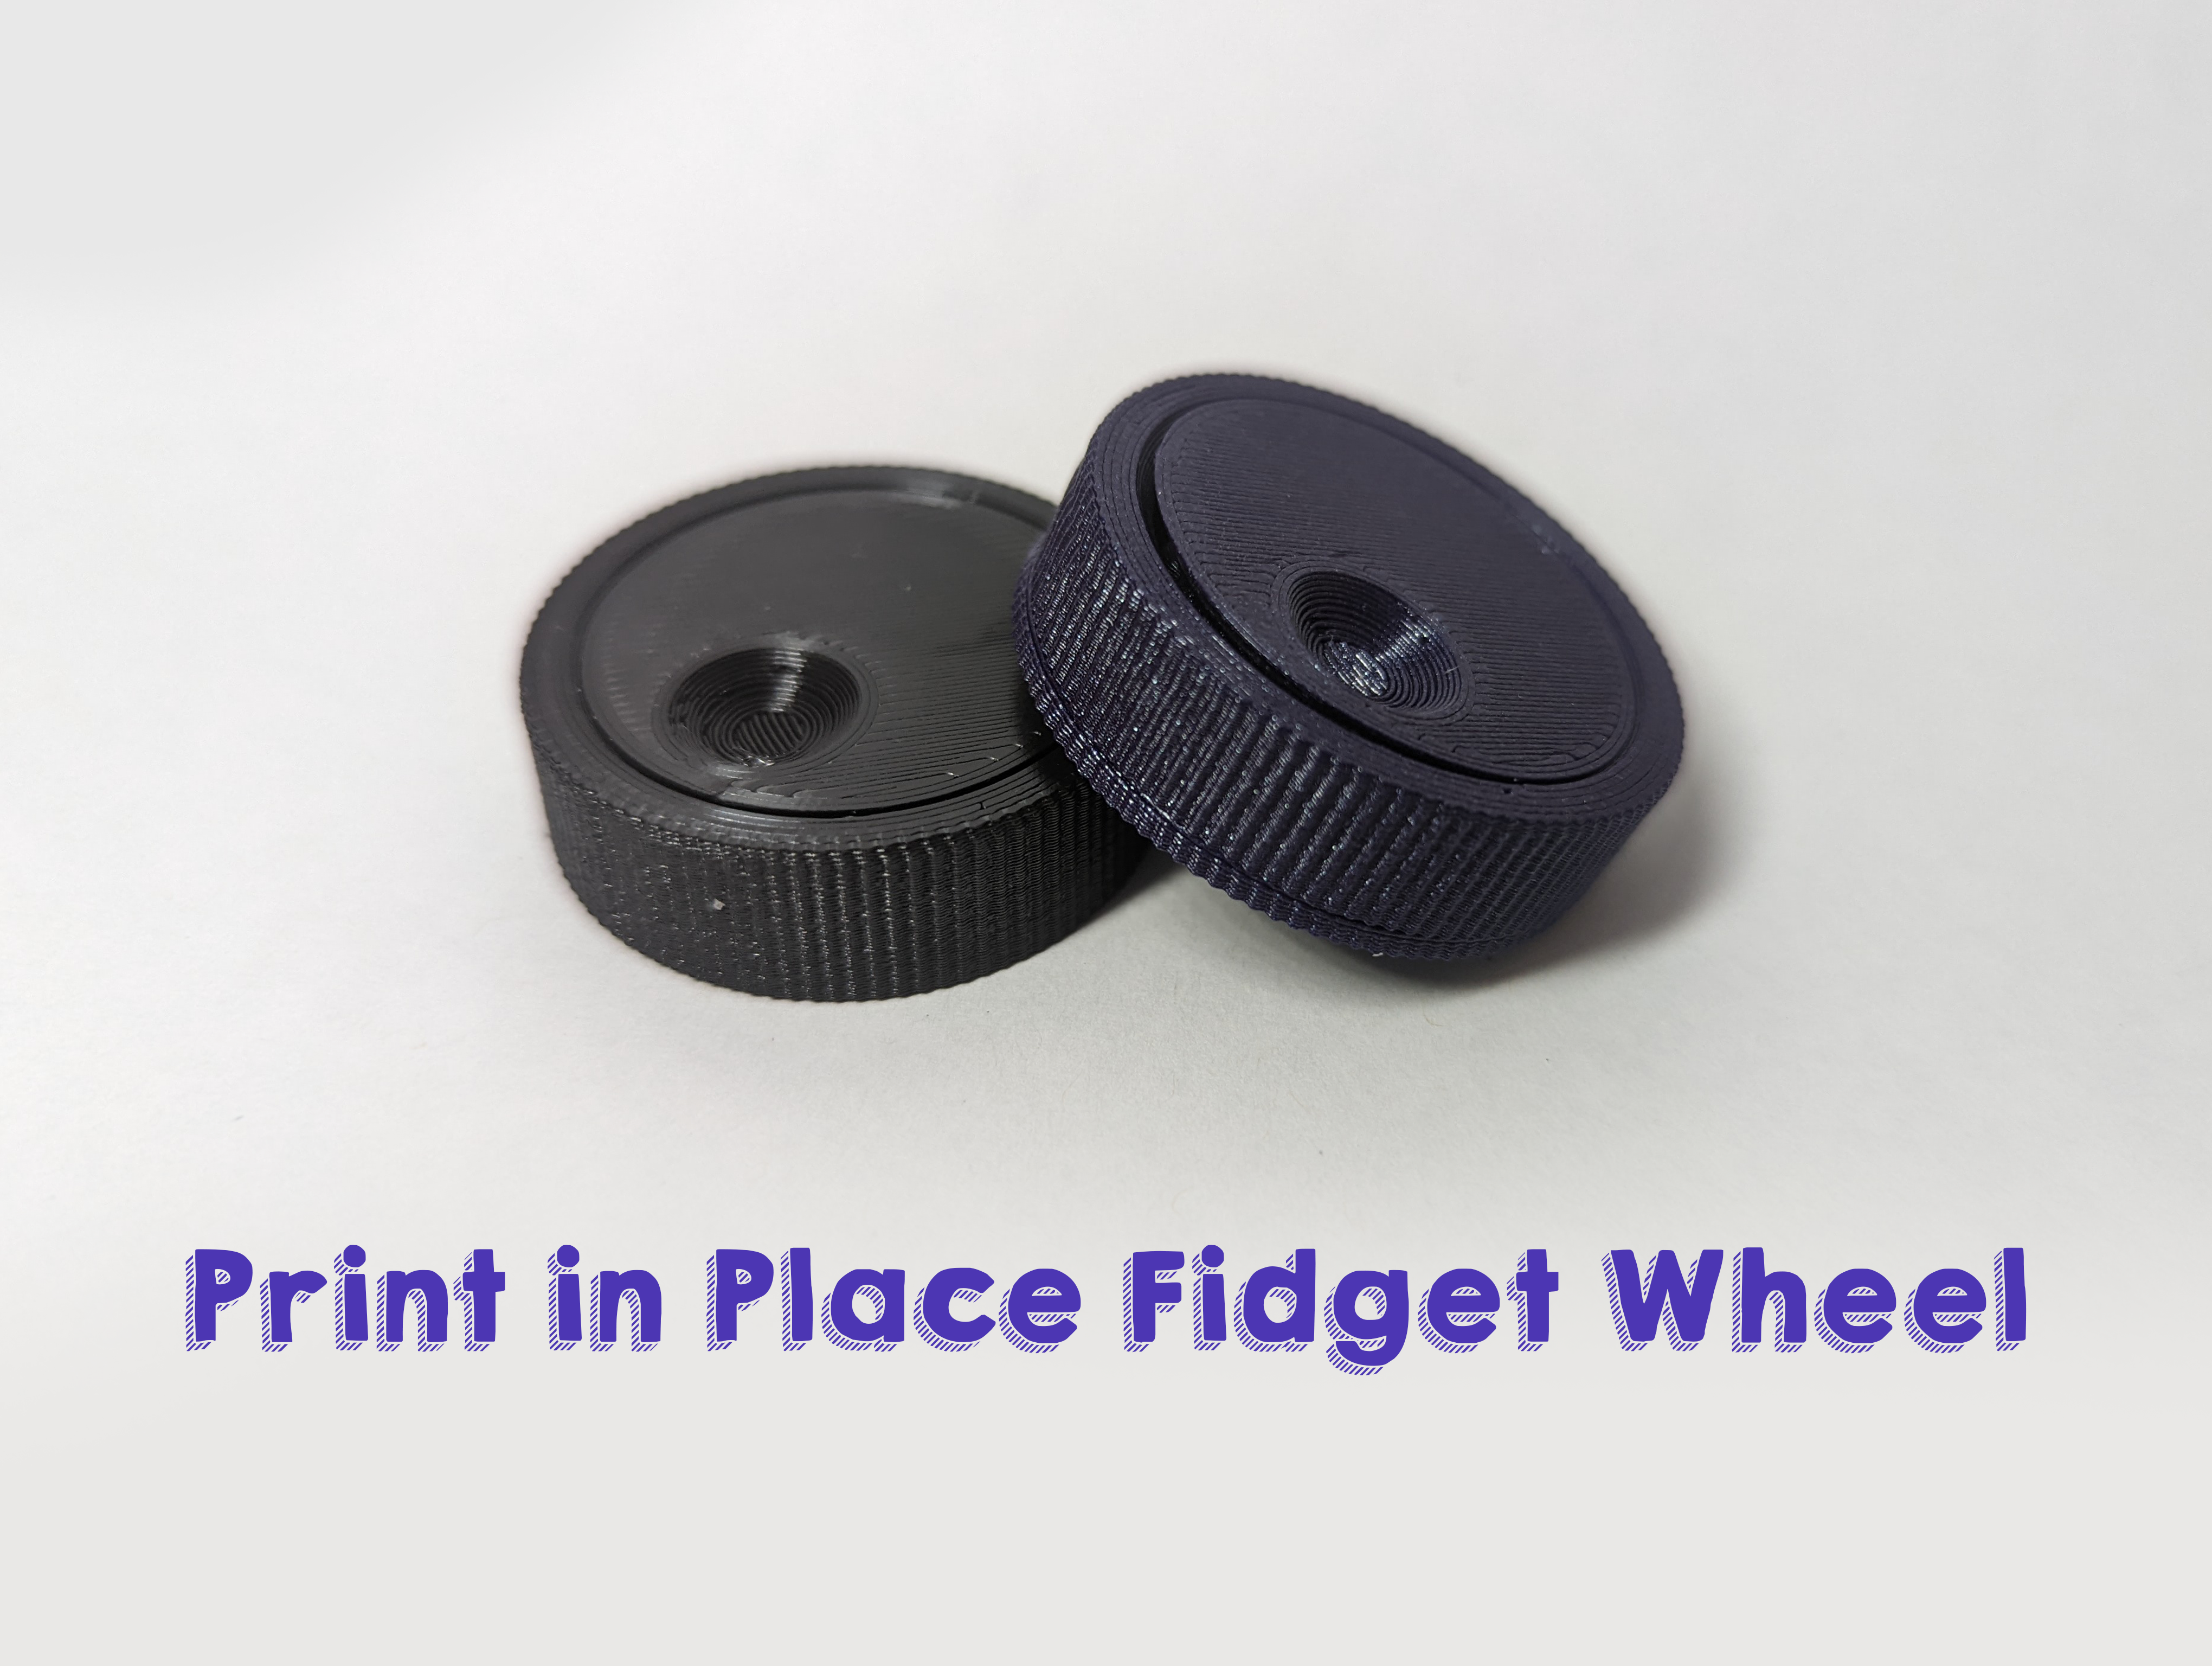 Print in Place Fidget Wheel